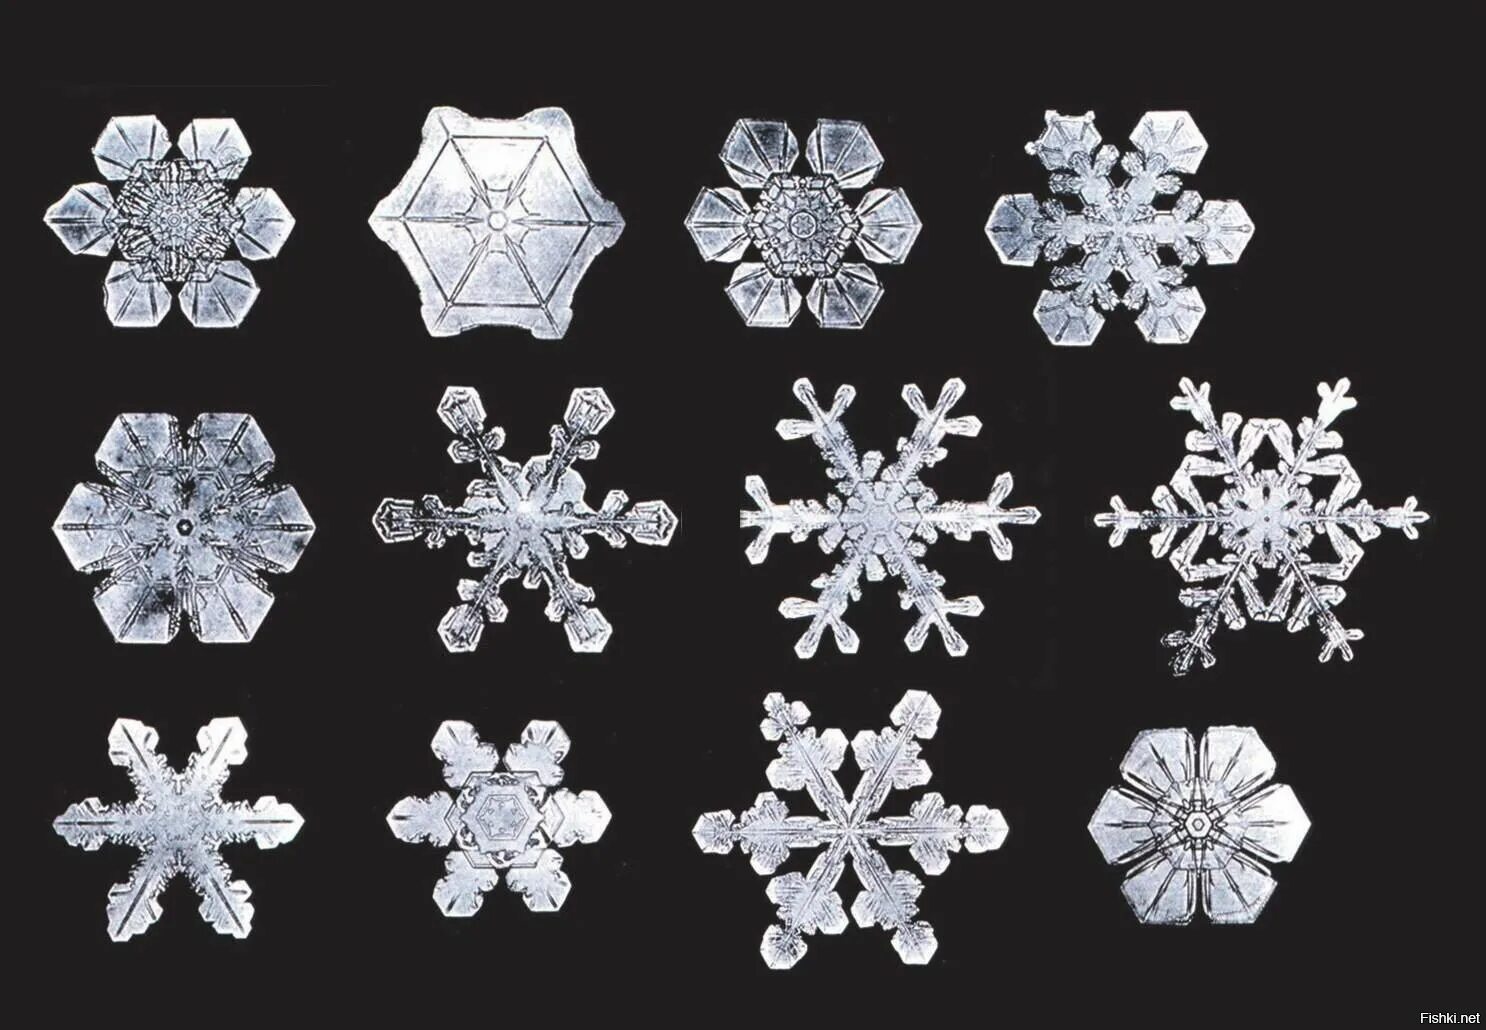 Формы снежинок. Разнообразие снежинок. Кристаллы снежинок. Разнообразие форм снежинок.